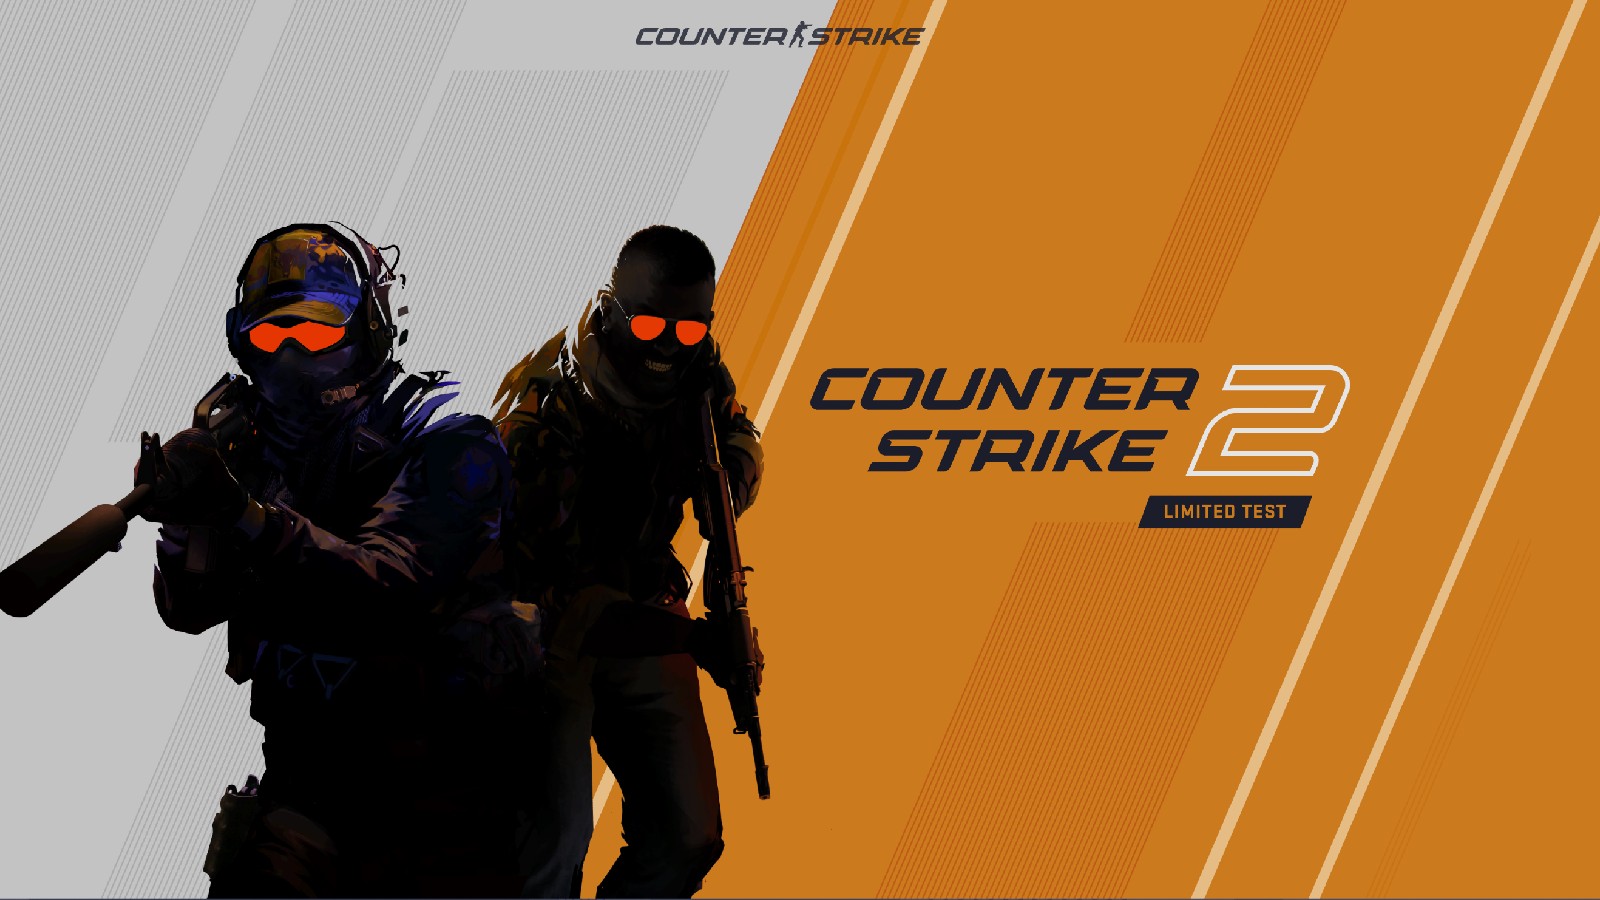 s1mple, Twistzz, altri professionisti di CSGO reagiscono alla rivelazione di Counter-Strike 2